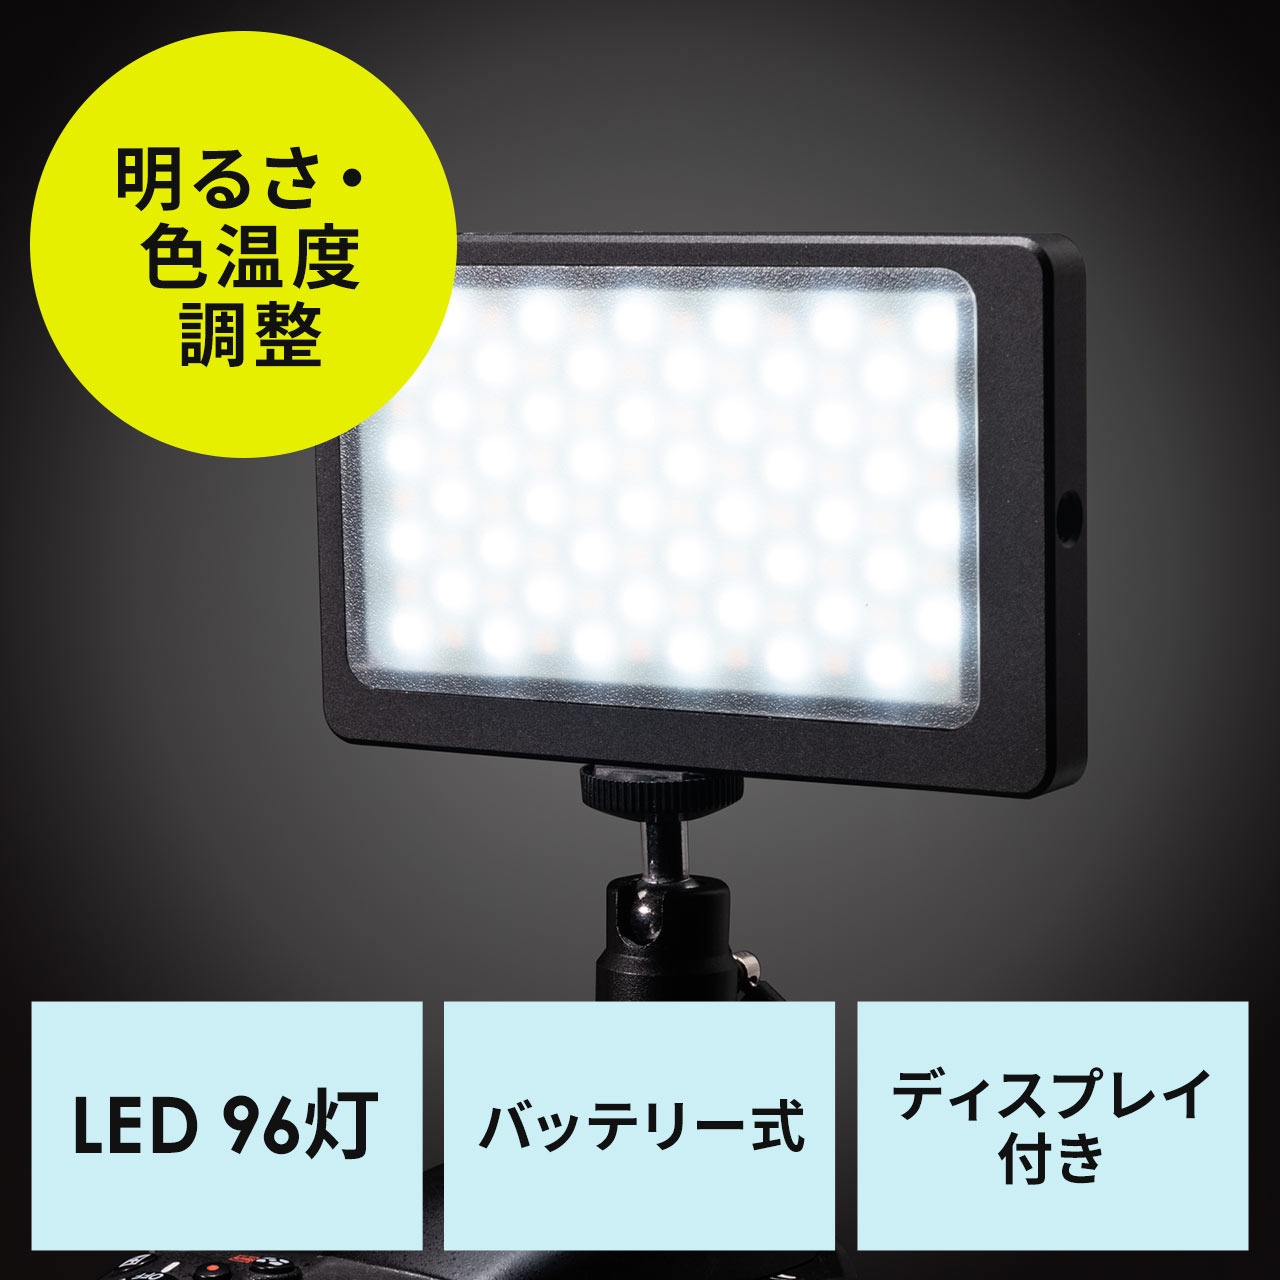 カメラLEDライト ビデオライト 明るさ 色温度調整 USB充電式 200-DG019